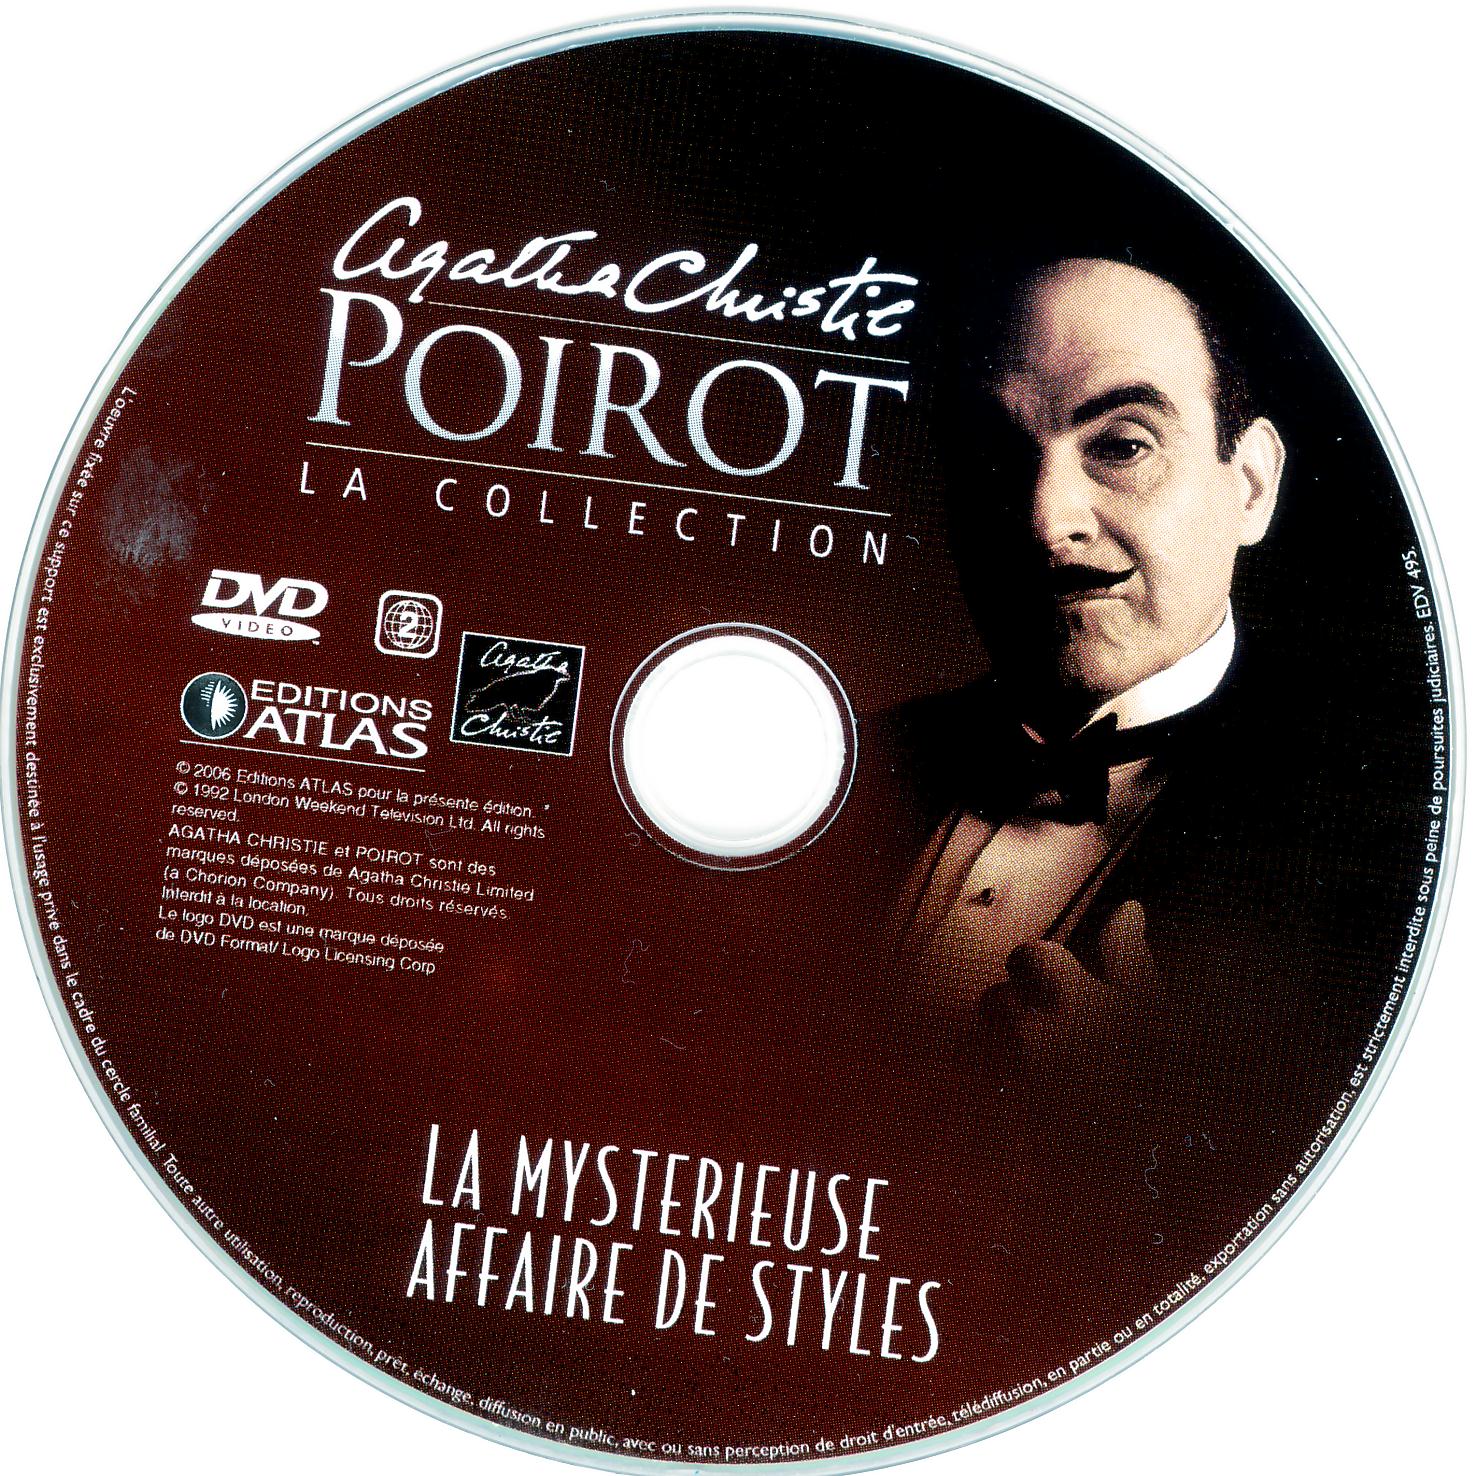 Hercule Poirot vol 3B